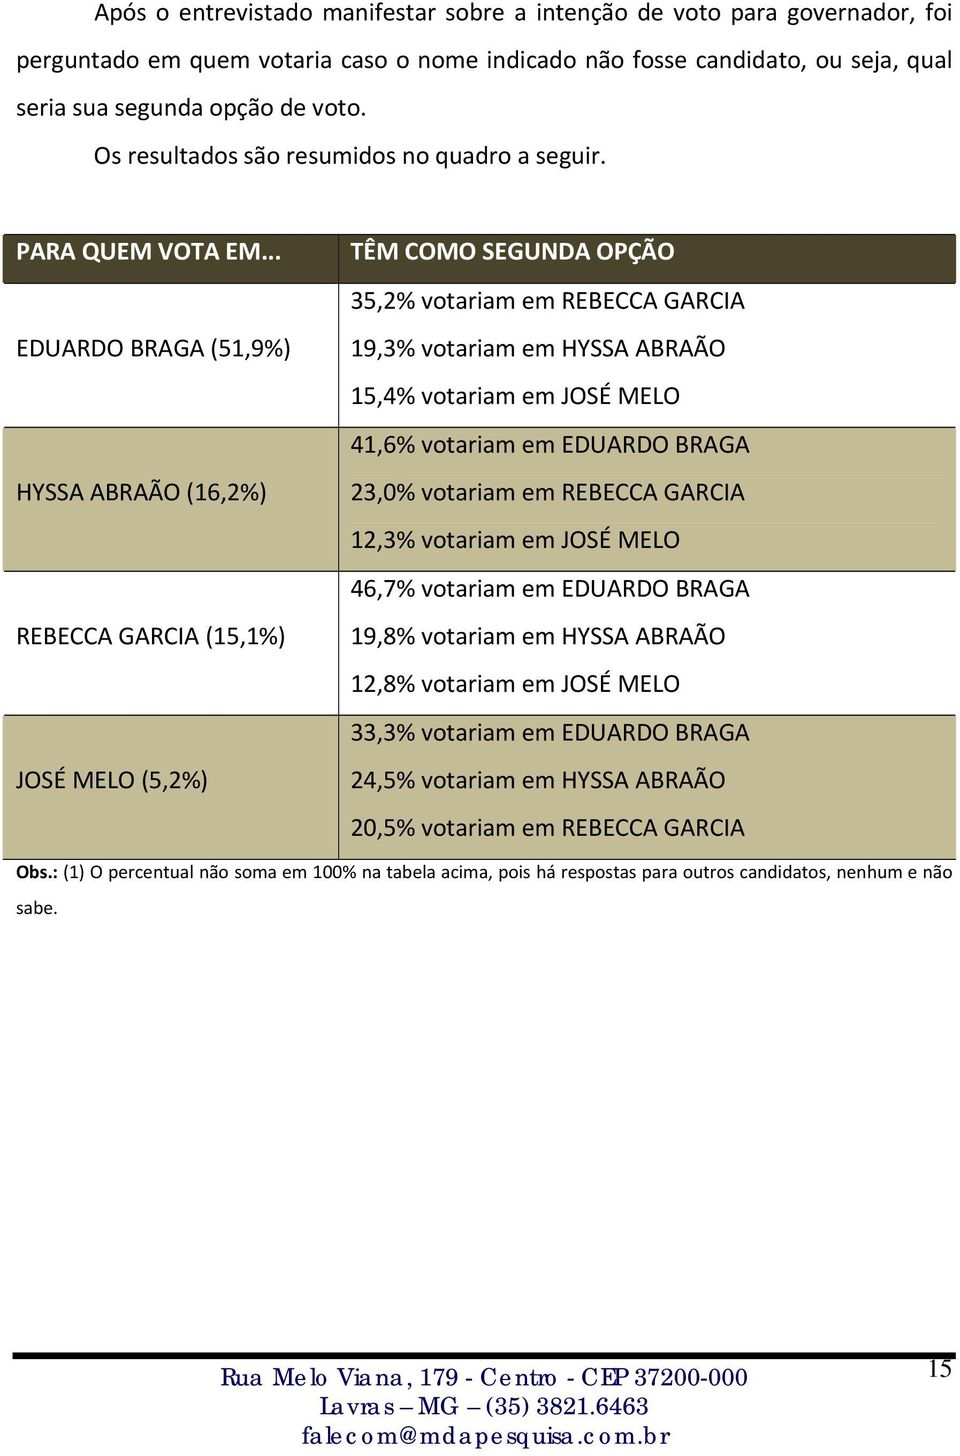 .. EDUARDO BRAGA (51,9%) HYSSA ABRAÃO (16,2%) REBECCA GARCIA (15,1%) JOSÉ MELO (5,2%) TÊM COMO SEGUNDA OPÇÃO 35,2% votariam em REBECCA GARCIA 19,3% votariam em HYSSA ABRAÃO 15,4% votariam em JOSÉ